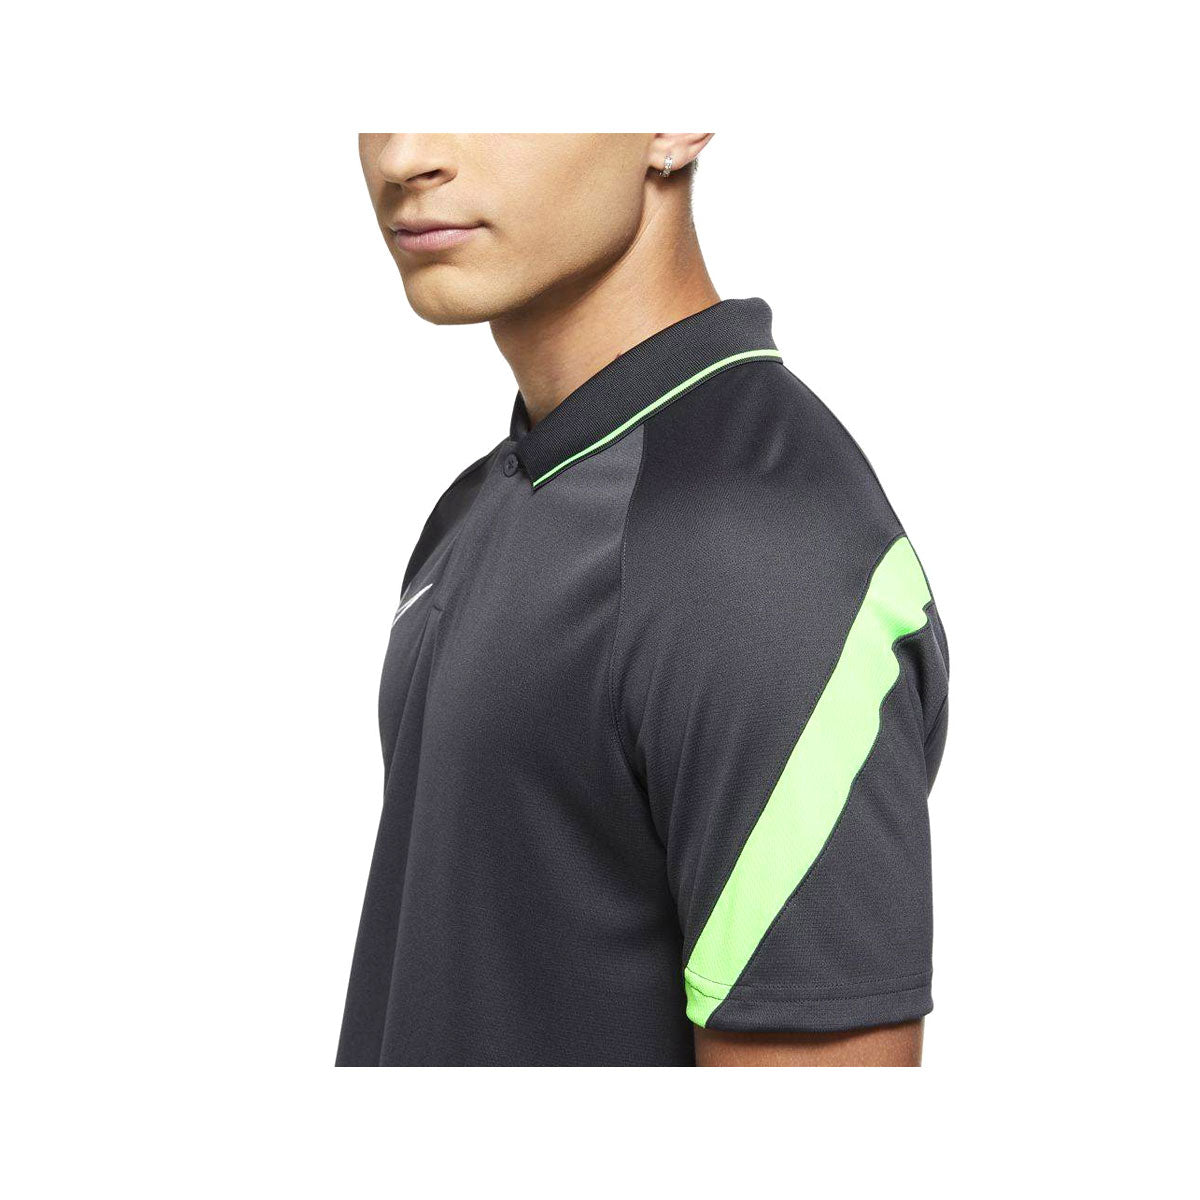 Nike Men's Academy Polo Shirt